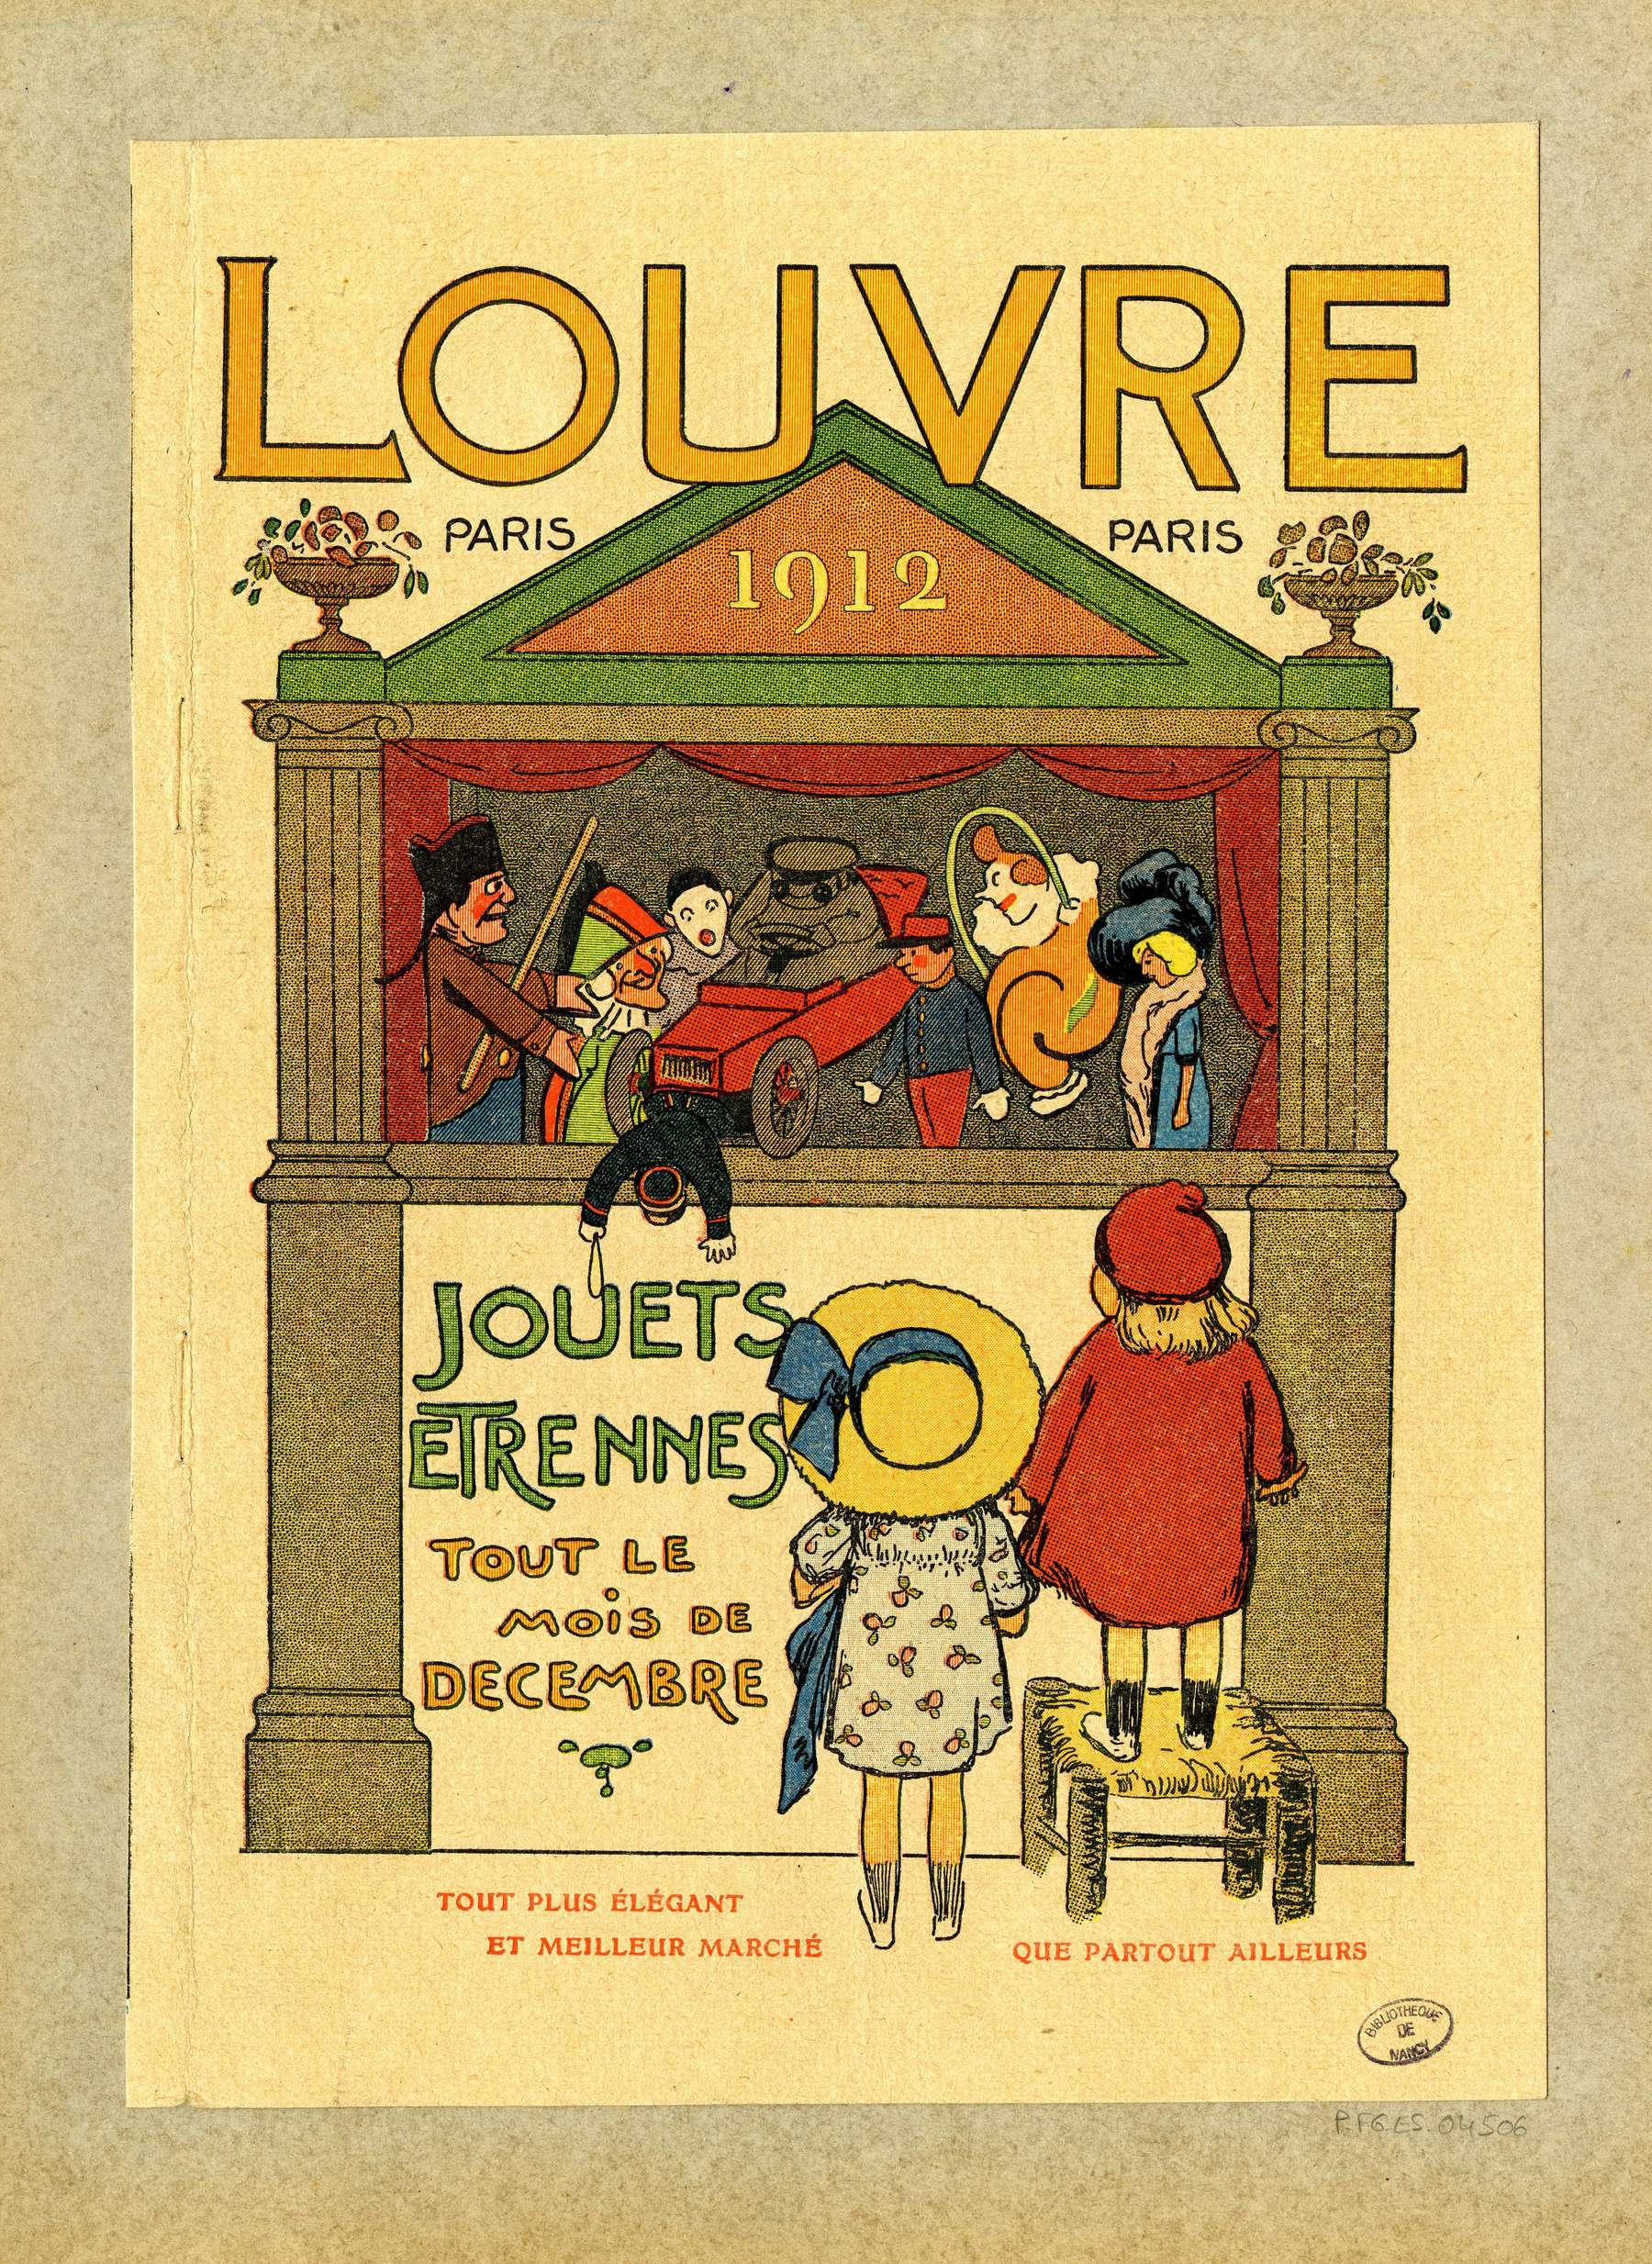 Contenu du Place au théâtre  au "Louvre" (Paris 1912)